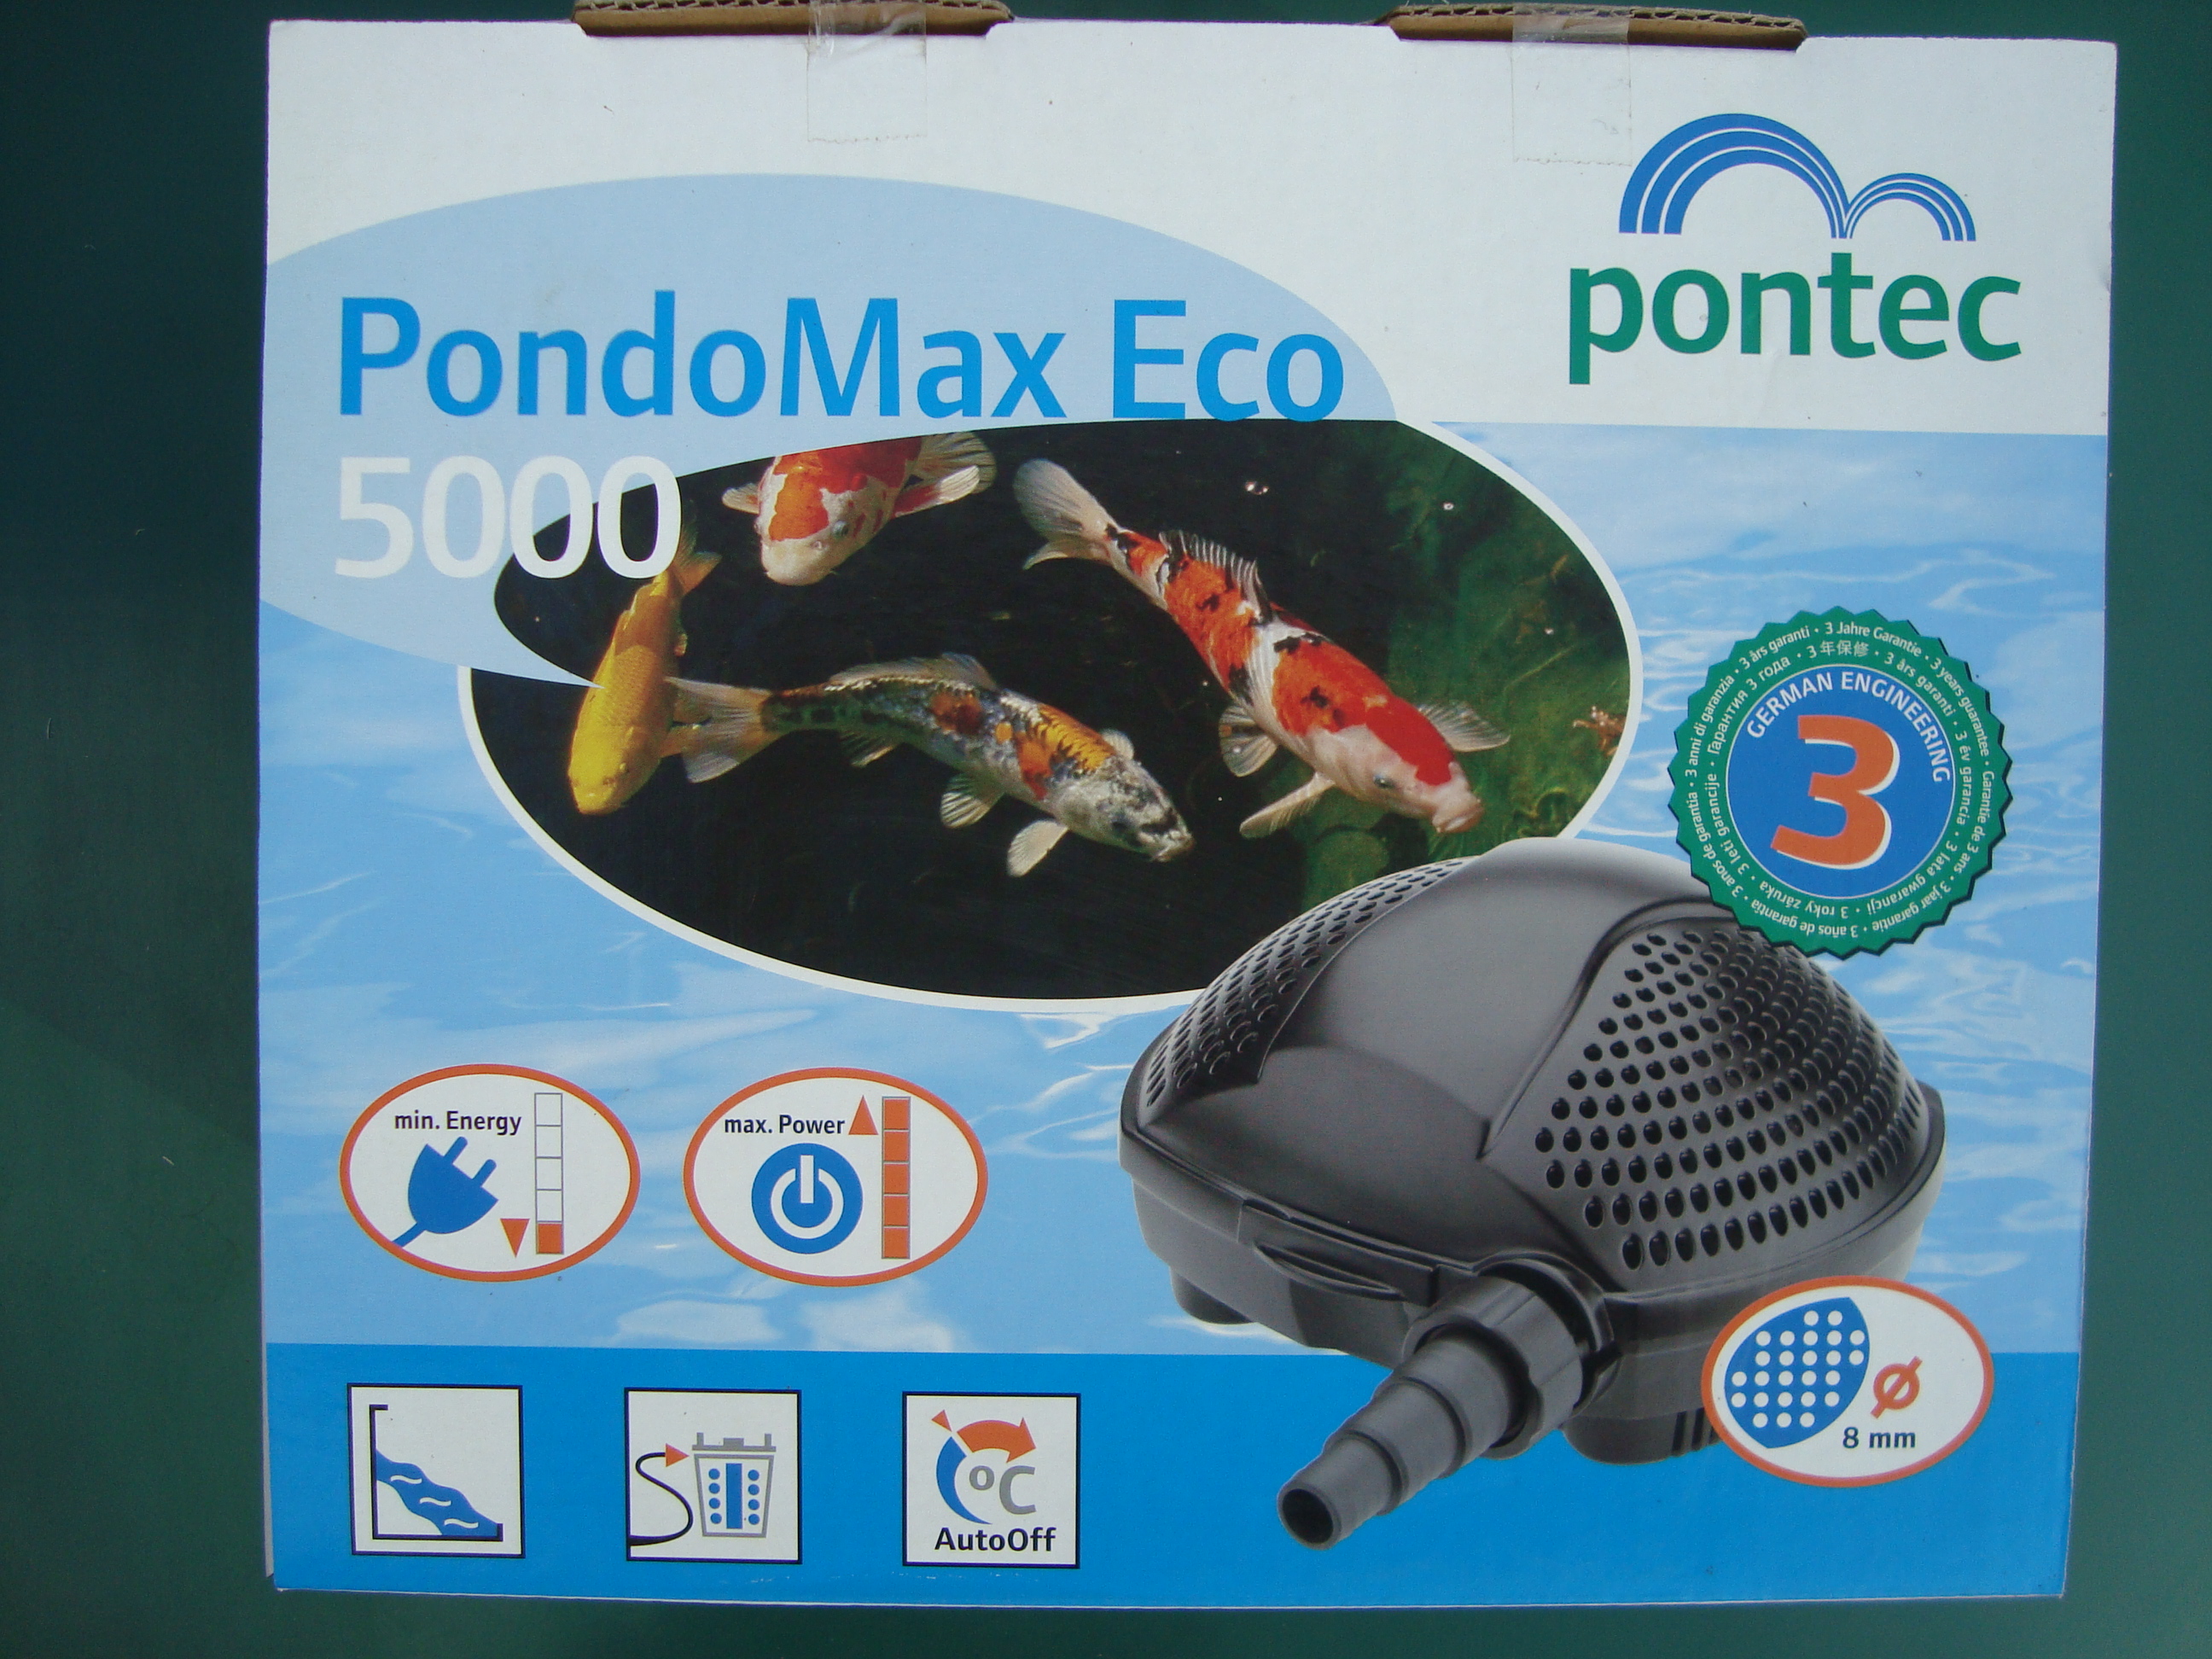 Jazierkové čerpadlo Pontec Pondomax Eco 5000 cena 106.- s DPH